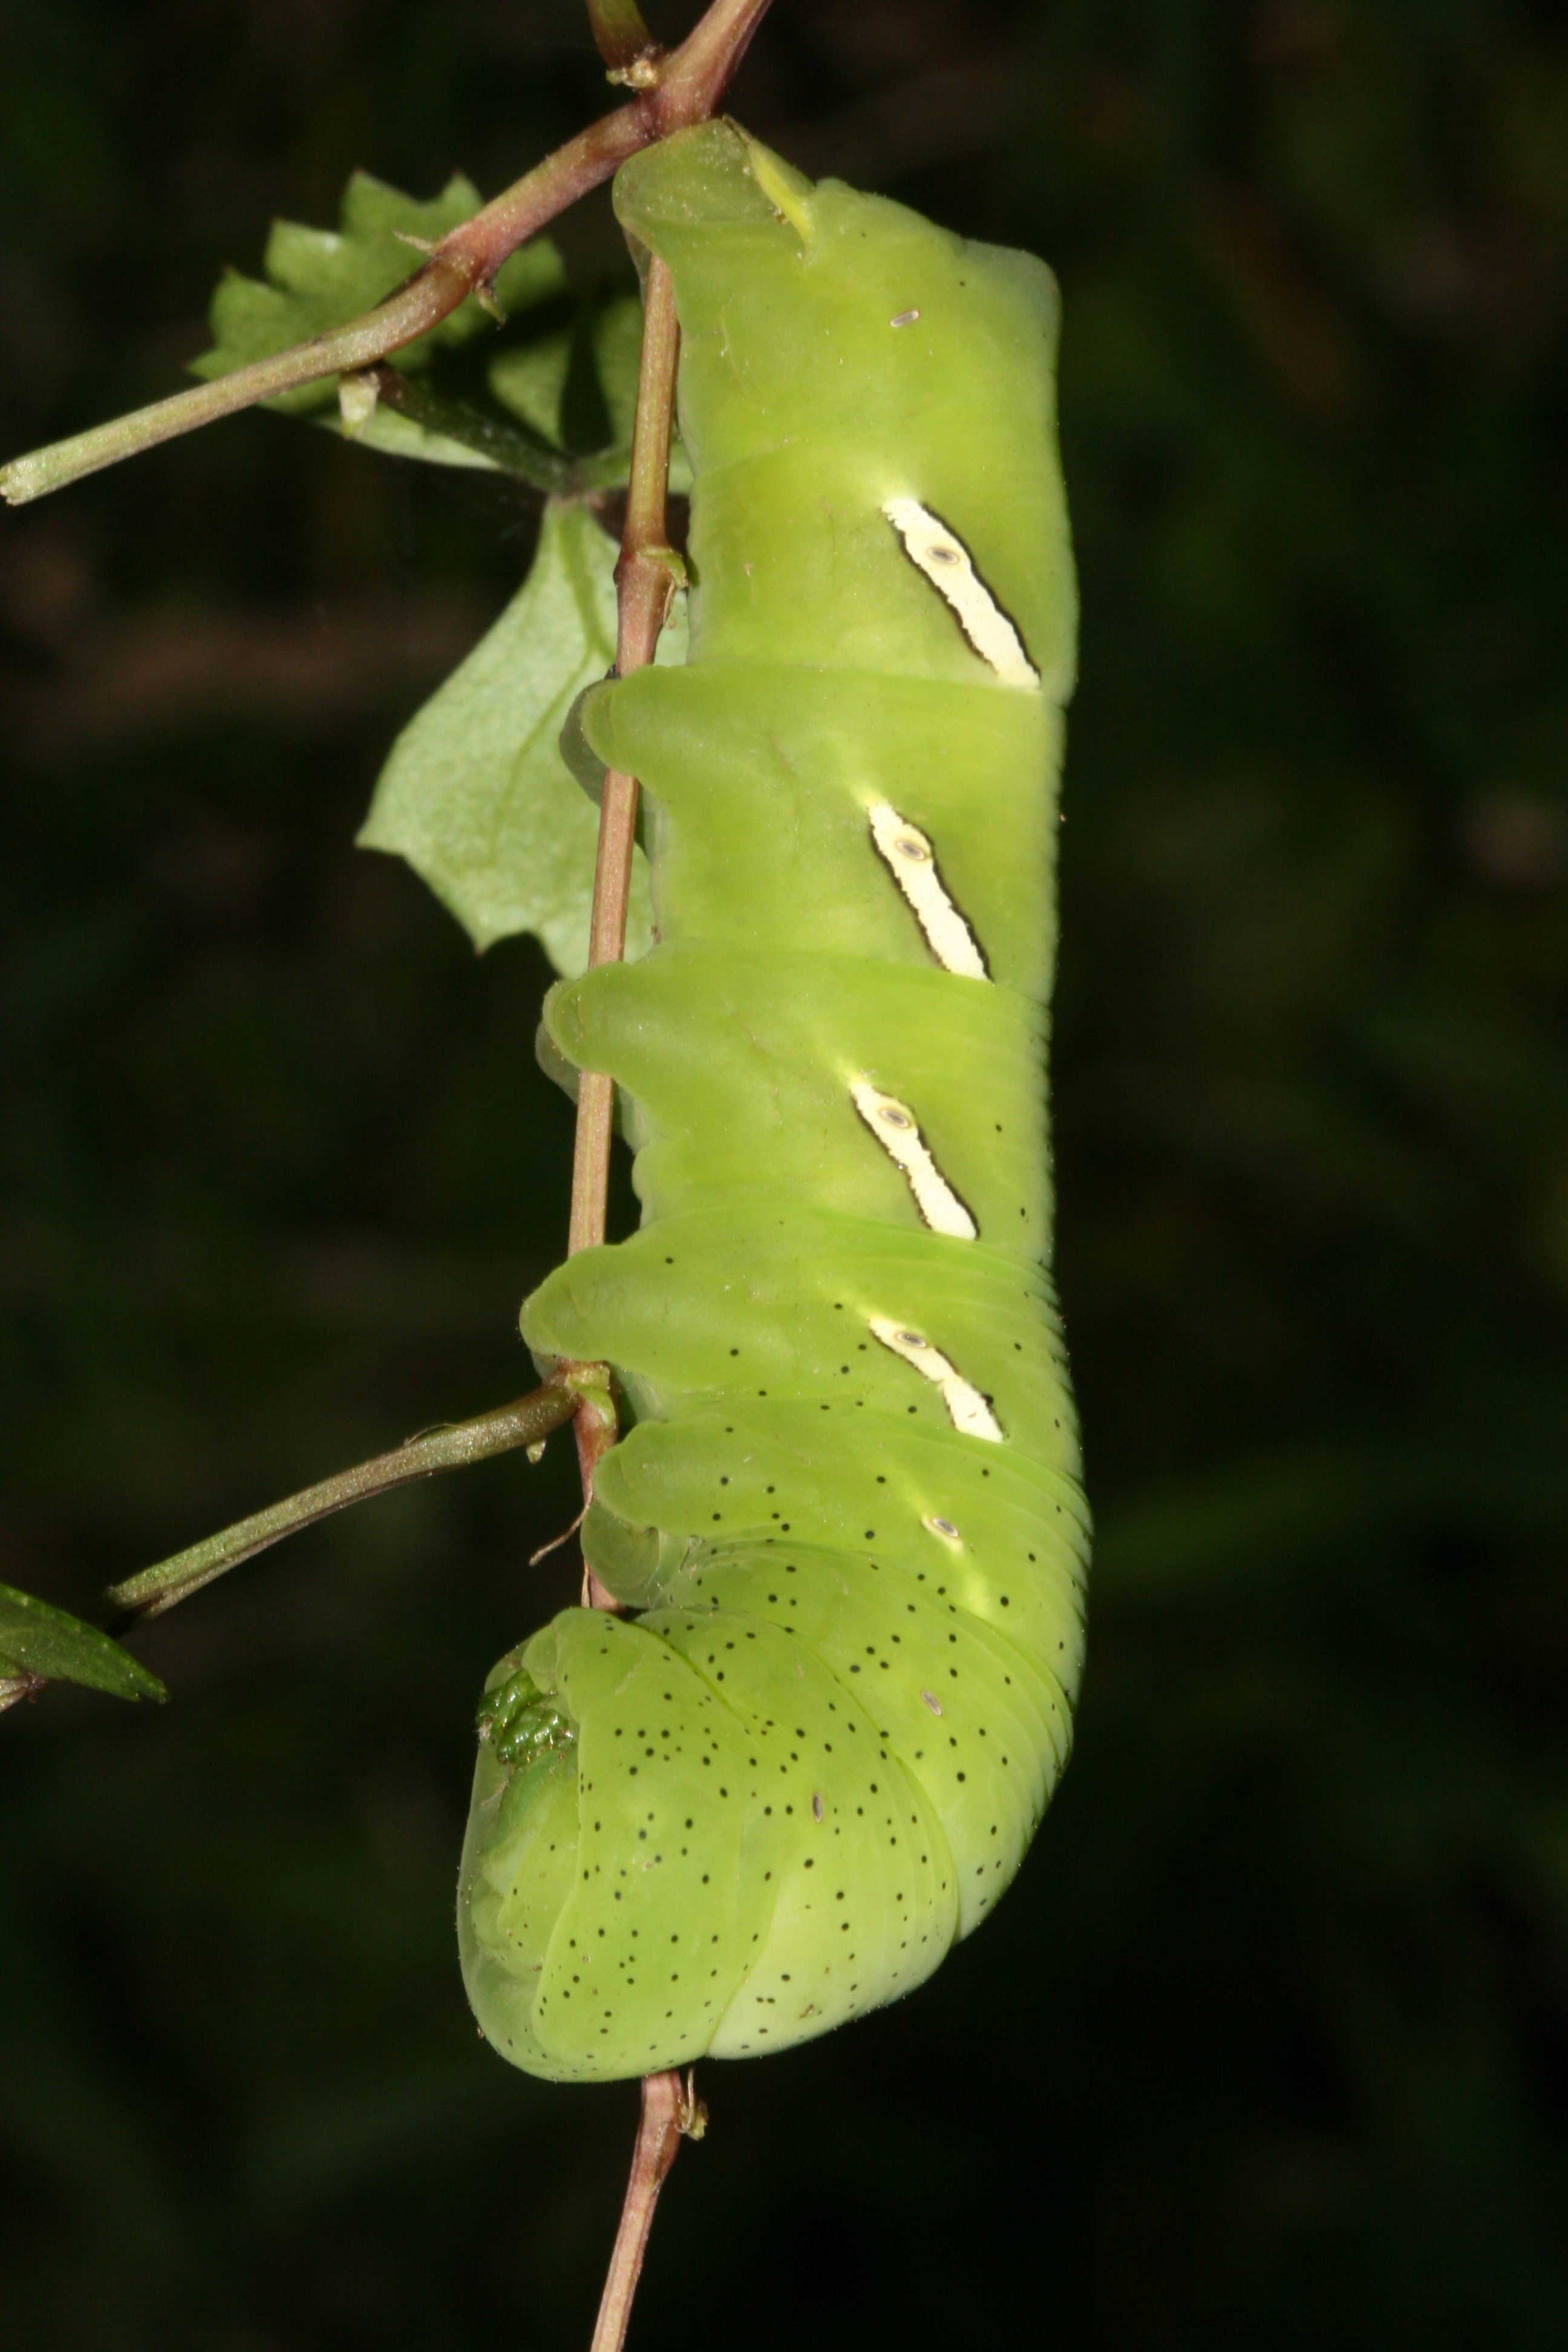 Pandorus sphinx moth caterpillar